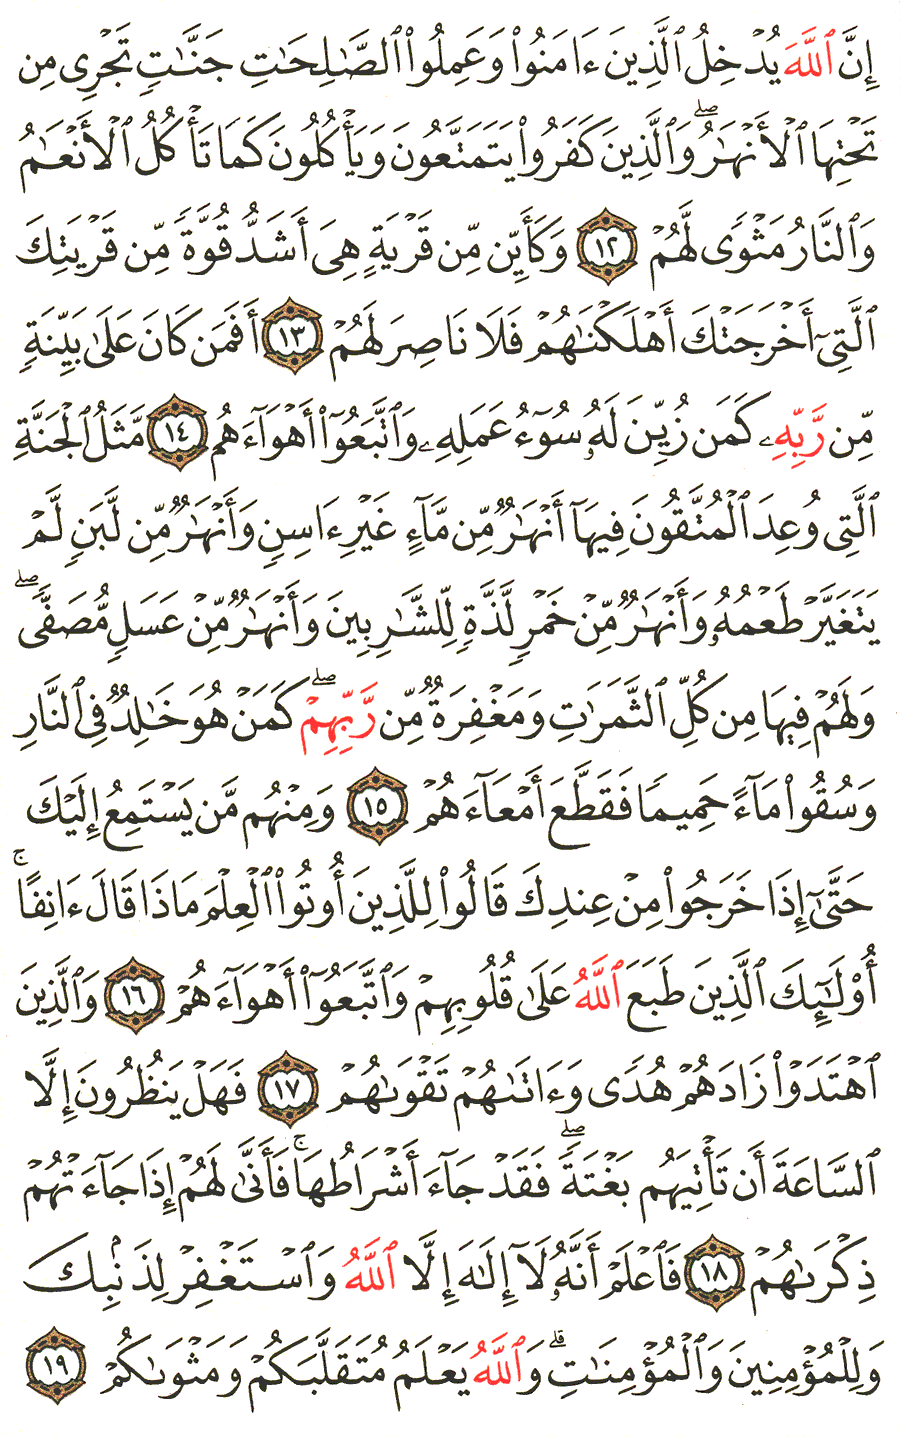 الصفحة 508 من القرآن الكريم